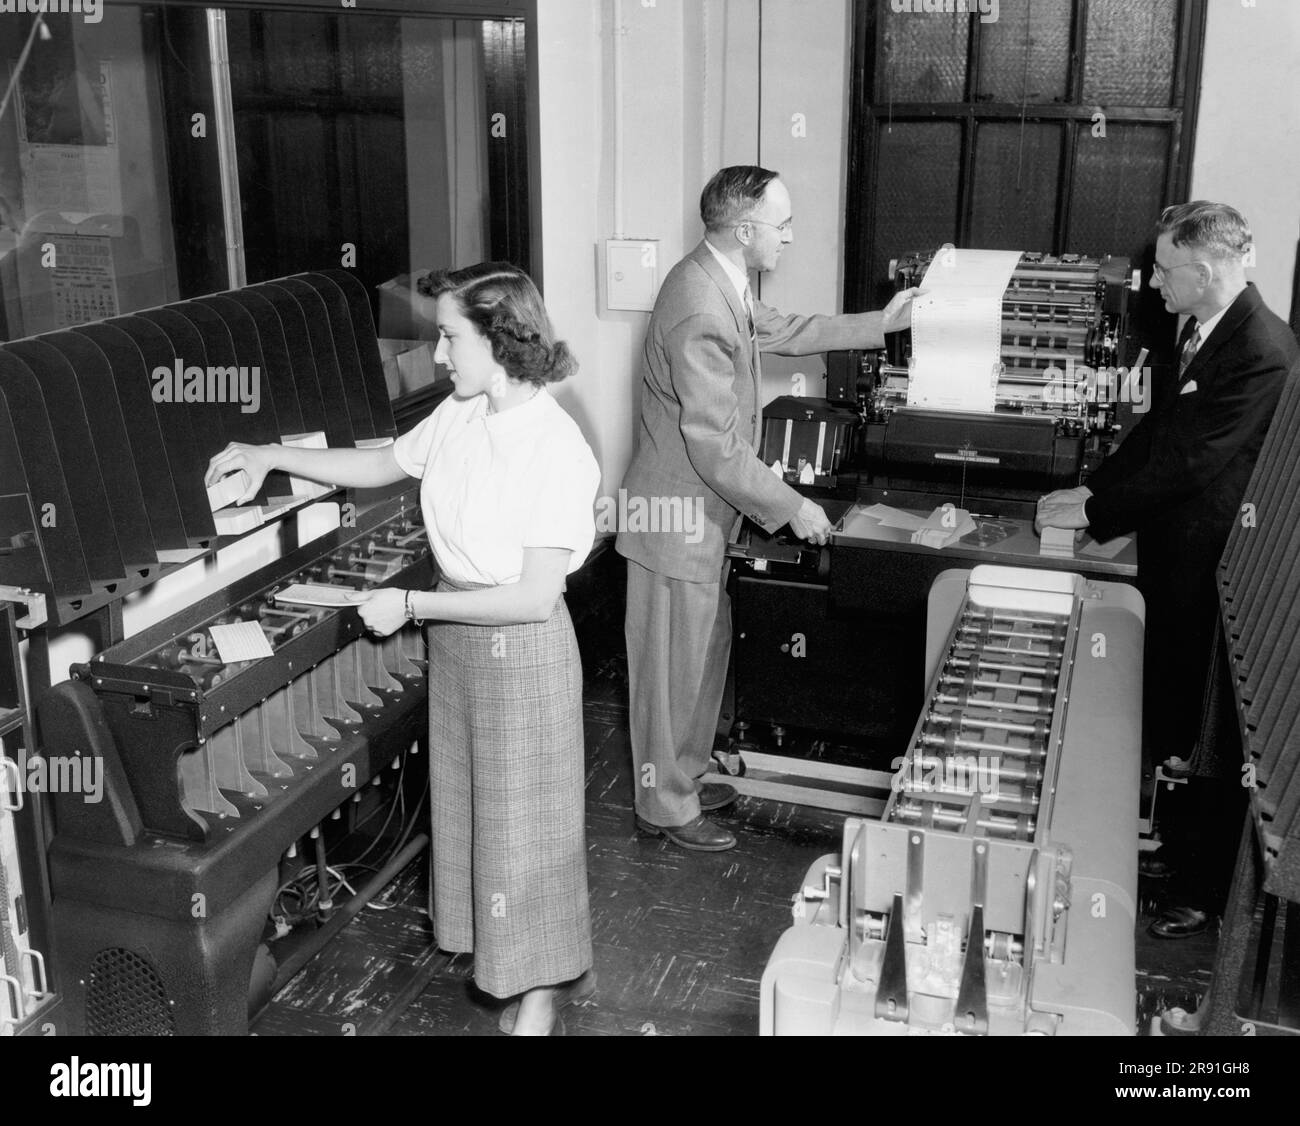 Cleveland, Ohio: Februar 1951, Eine Mitarbeiterin, die Lochkarten lädt, und zwei Männer, die sich einen Ausdruck von einem IBM-Buchhaltungsgerät in den Büros der Erie Railroad ansehen. Stockfoto